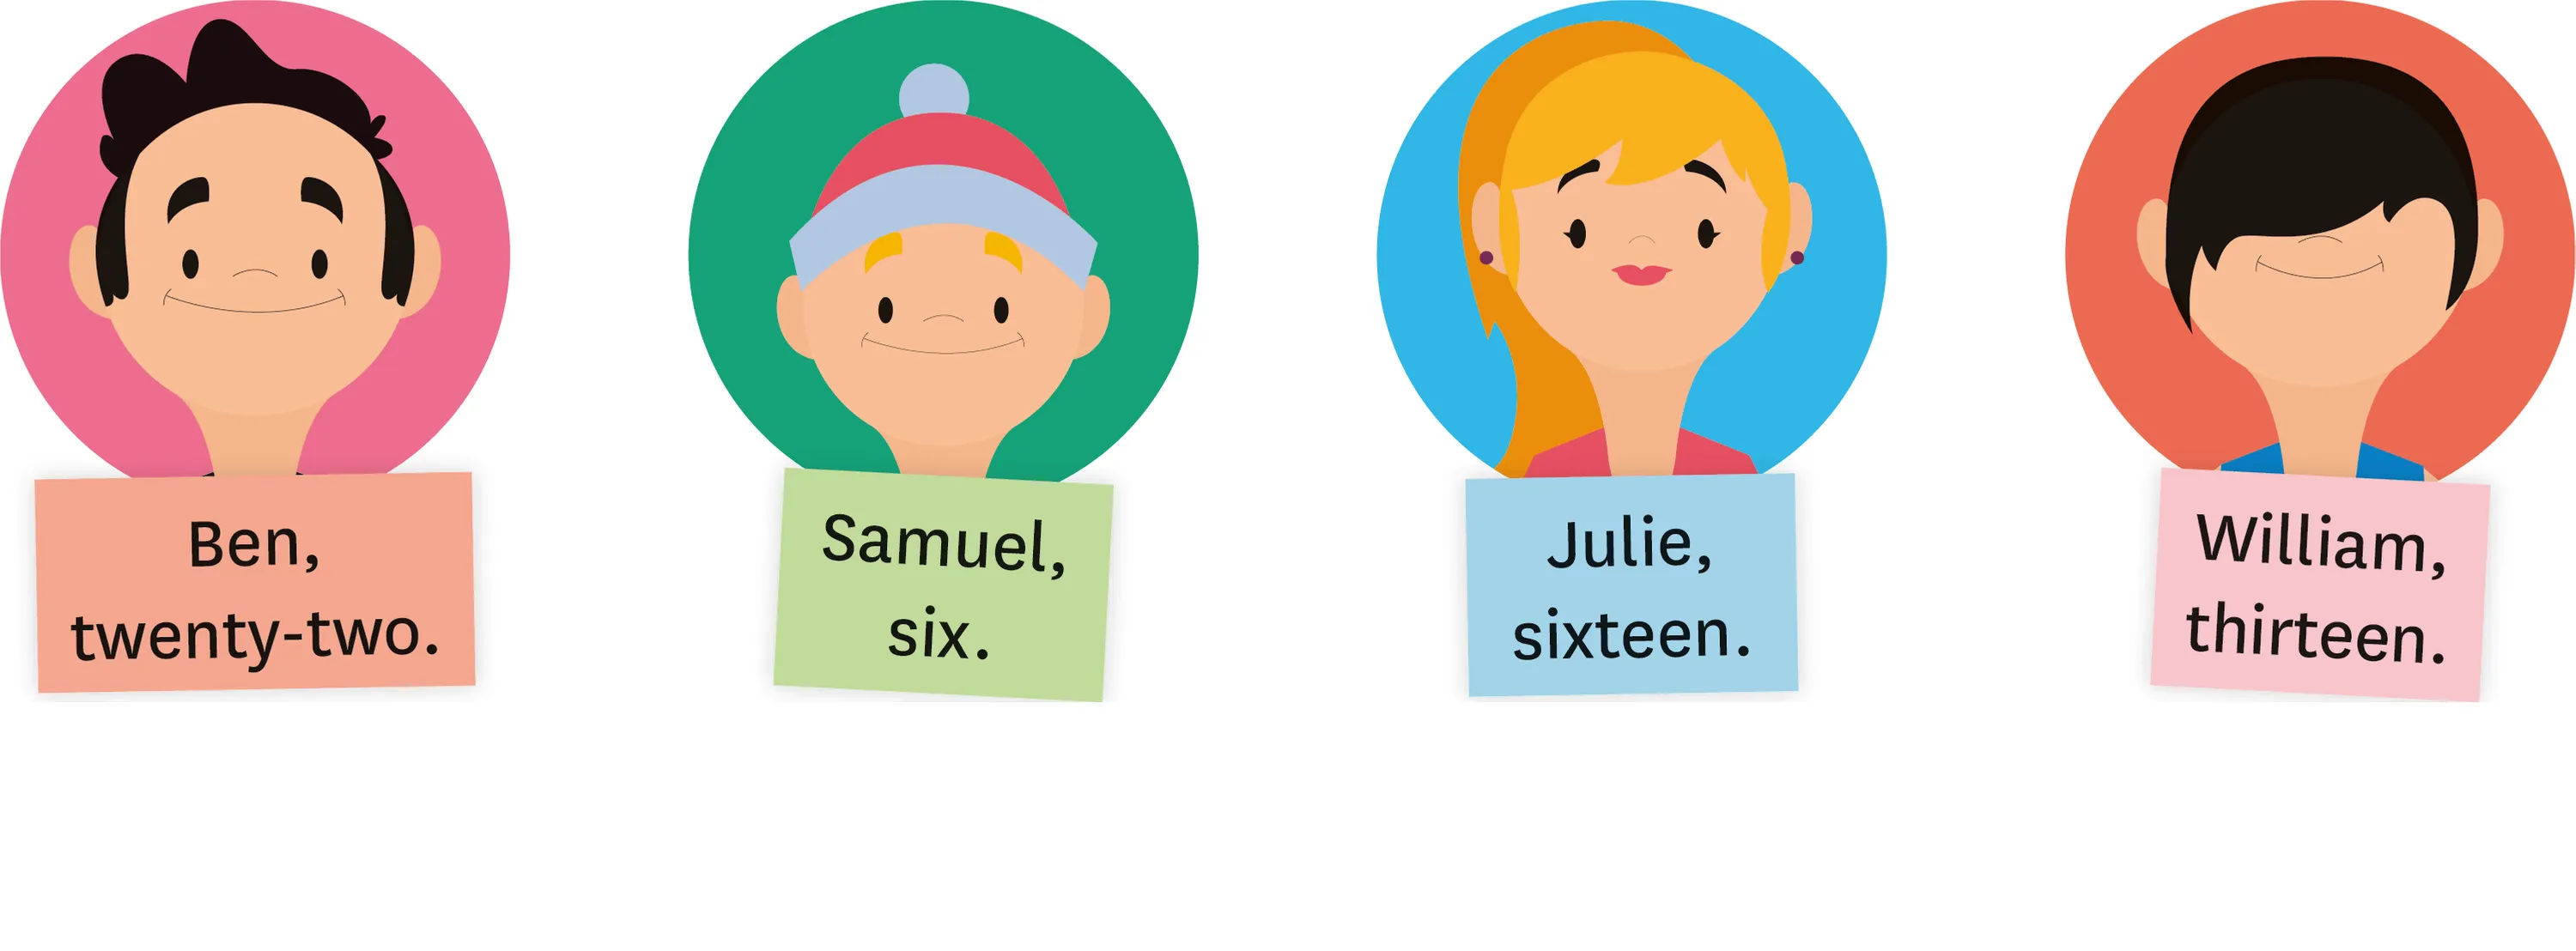 4 personnages dessinés : Ben twenty-two, Samuel, six, Julie sixteen, william thirteen